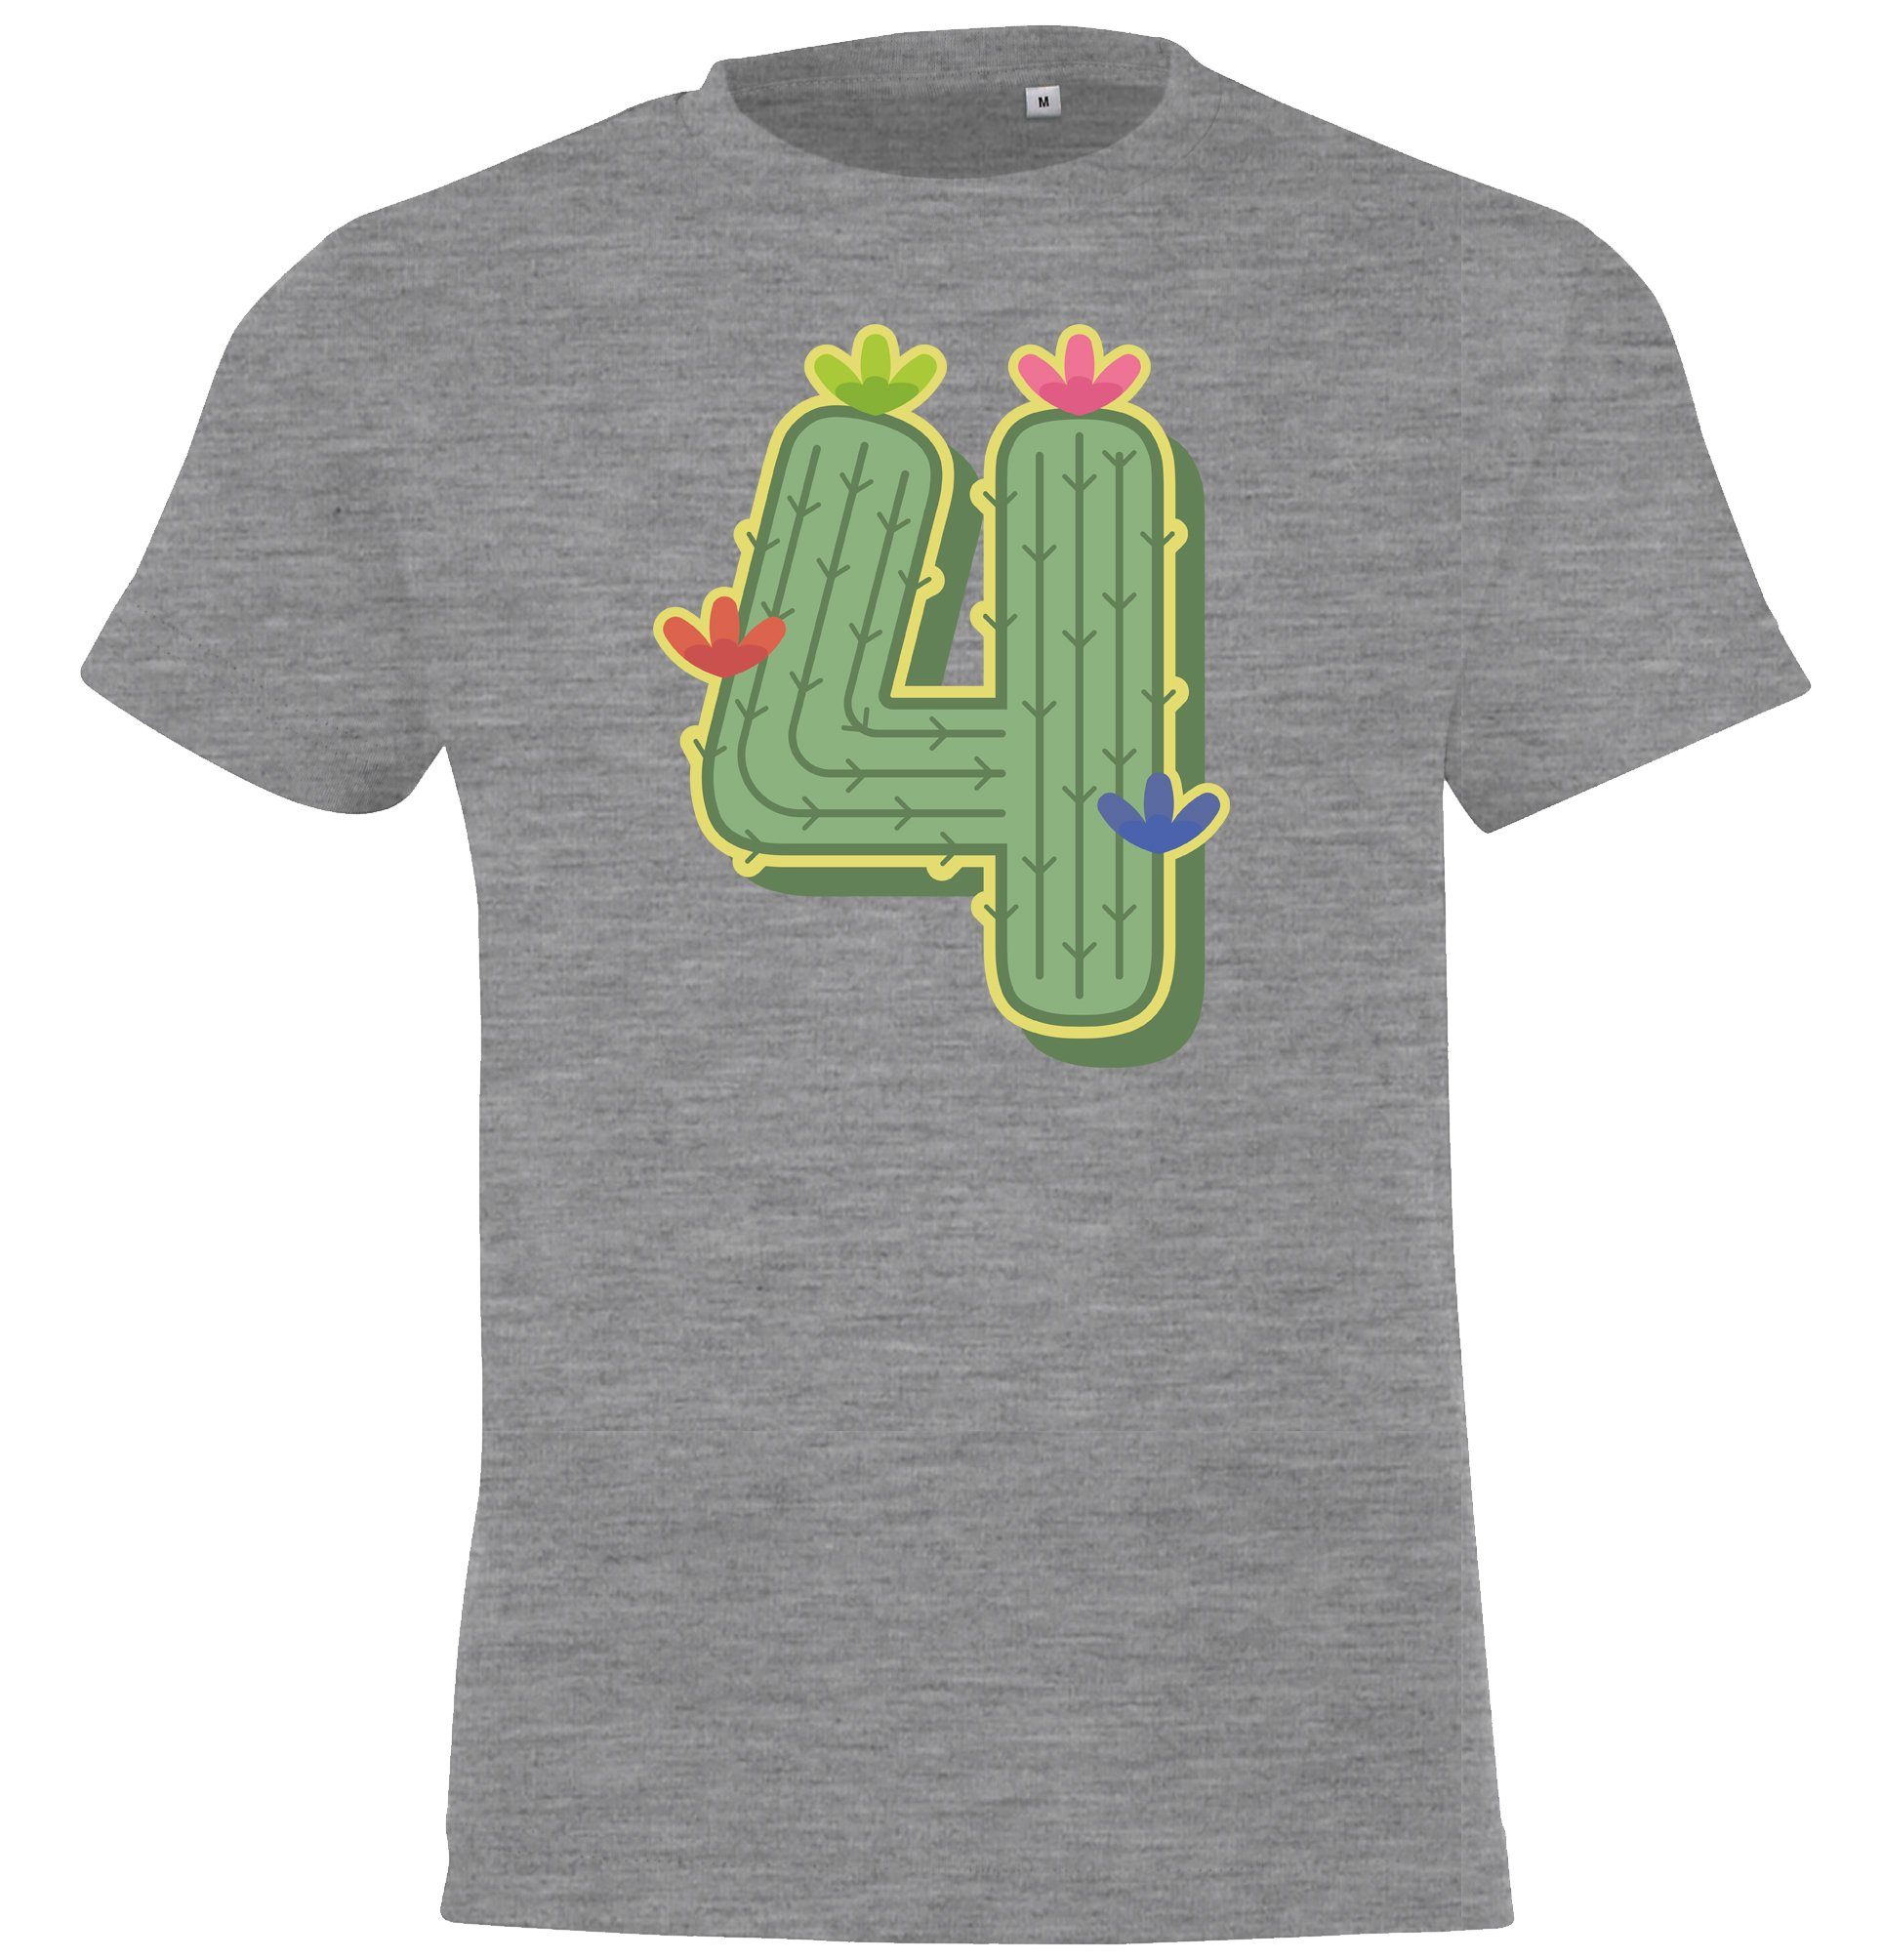 Youth Designz T-Shirt 4 Jahre Alt Geburtstags T-Shirt für Mädchen mit lustigem Kaktus Frontprint Grau | T-Shirts